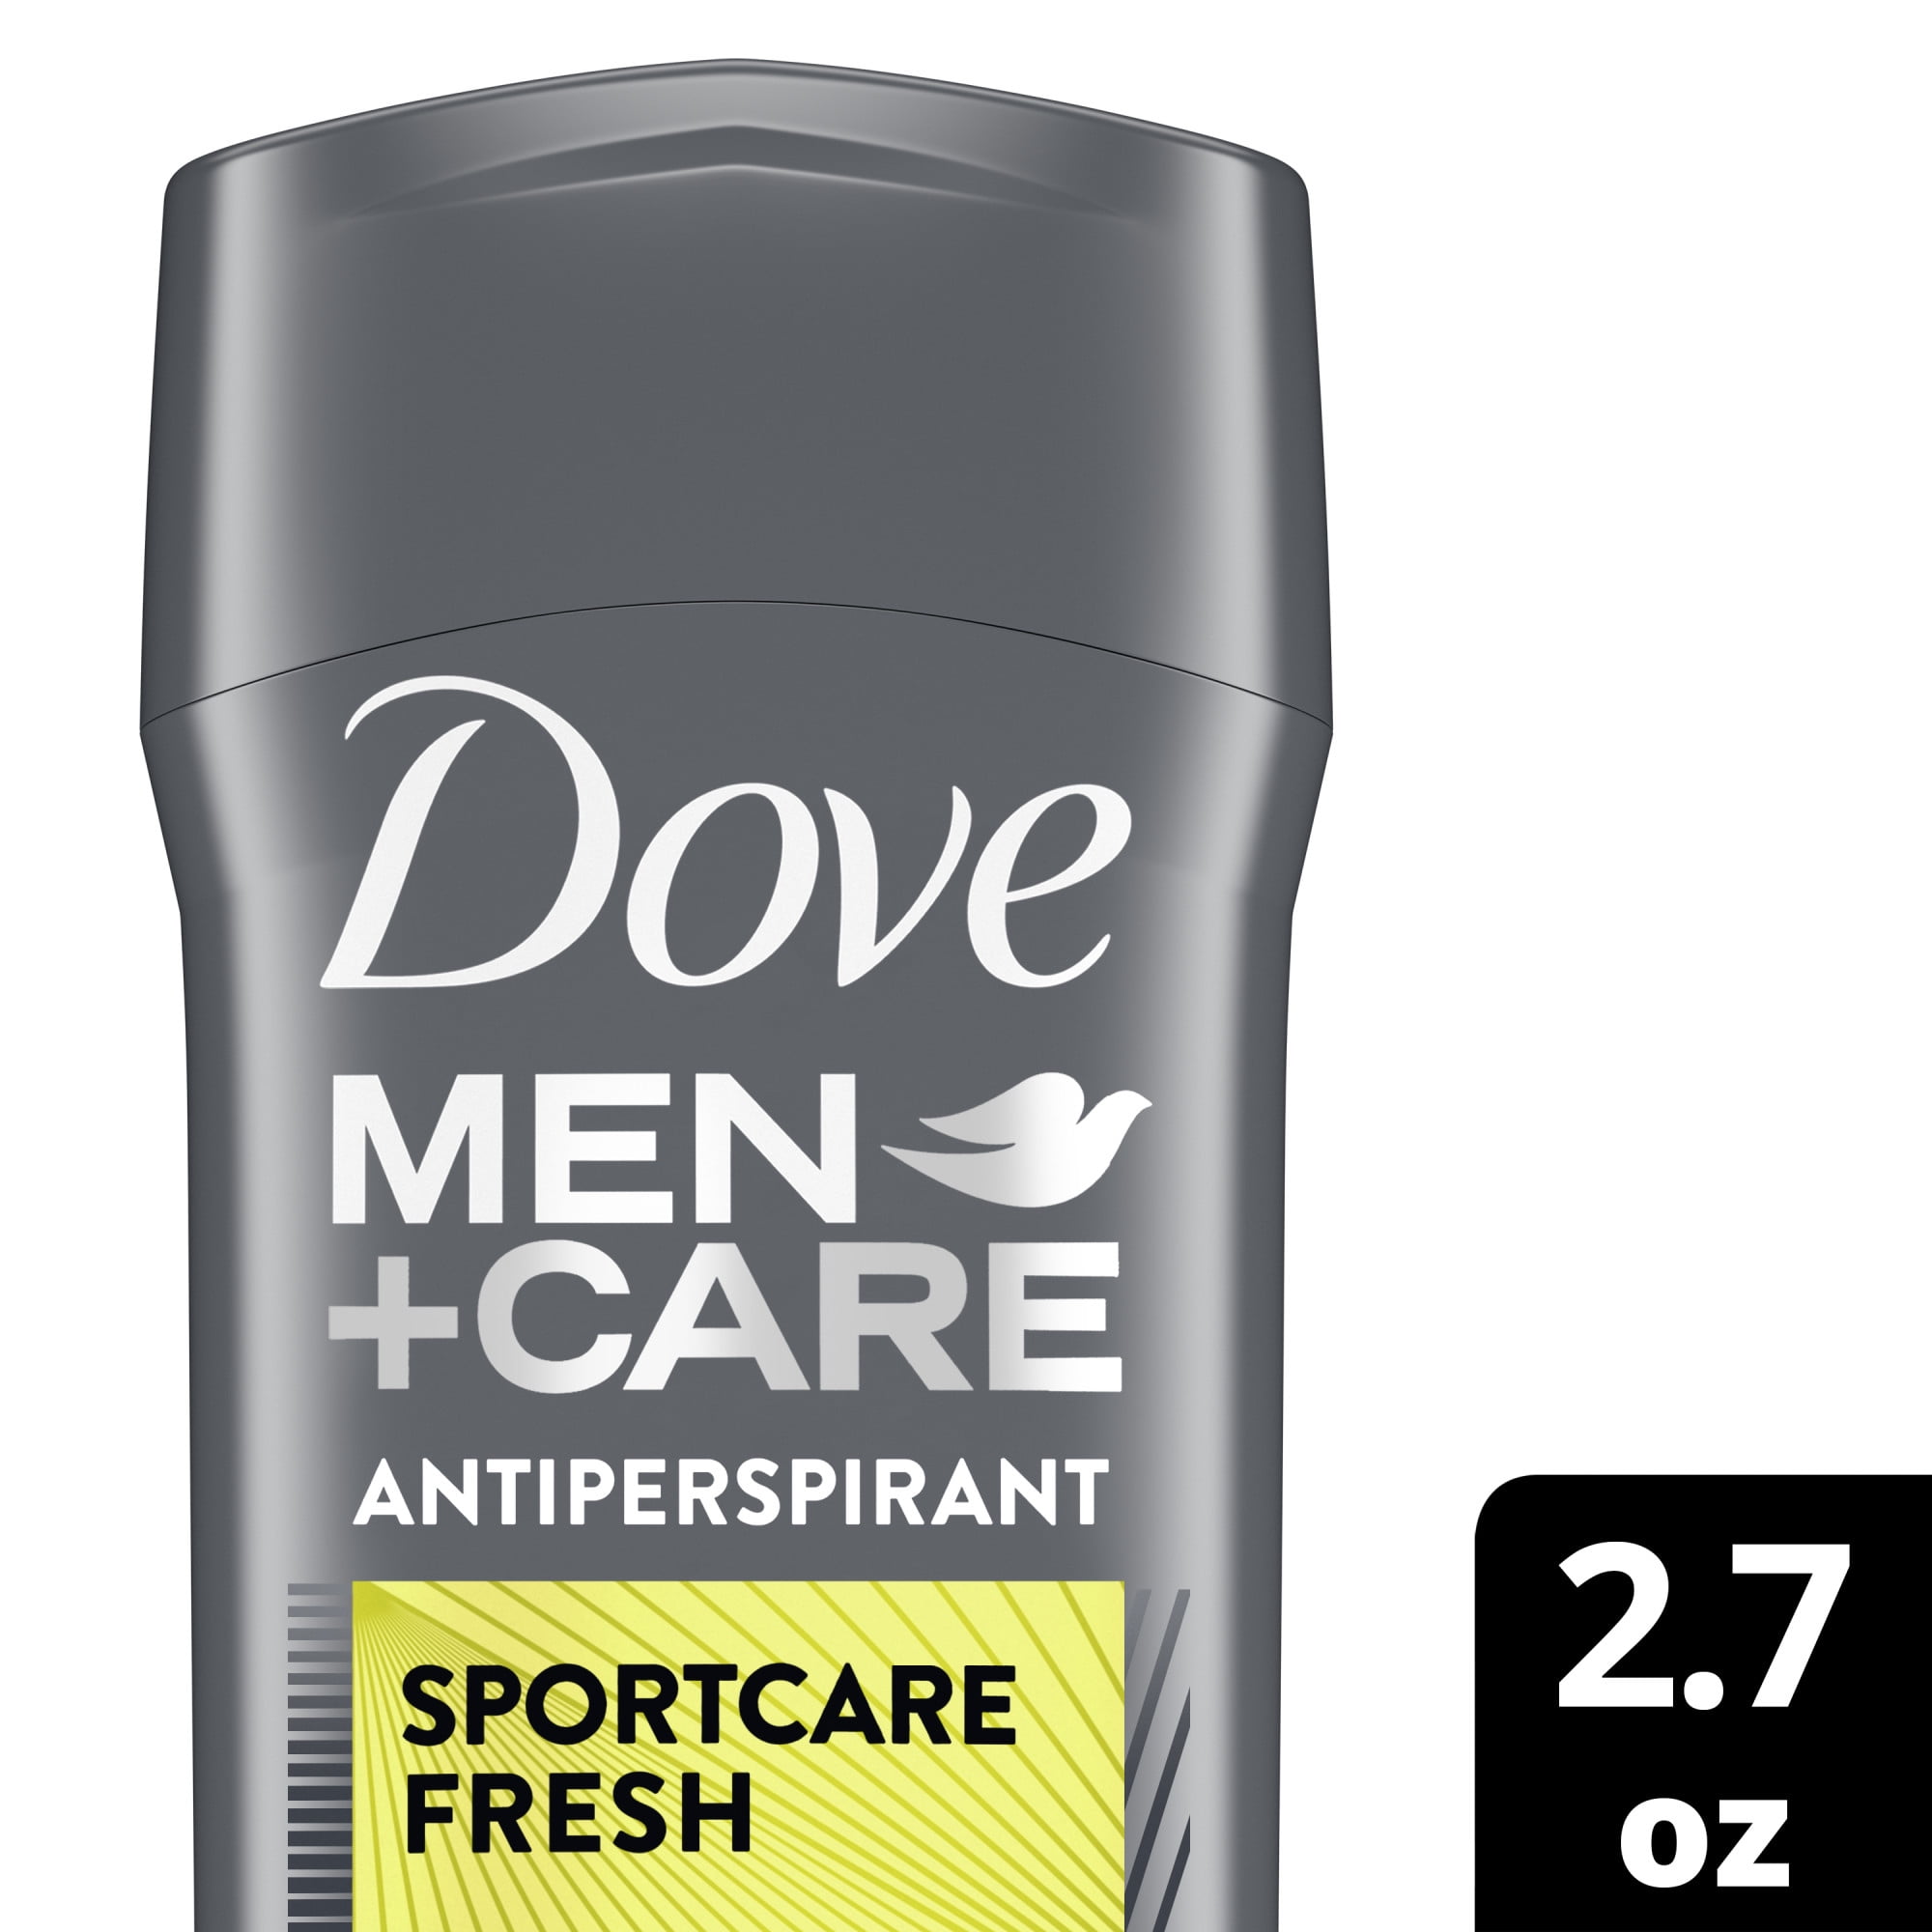 Dove Men+Care SportCare Antiperspirant Deodorant Fresh, 2.7 oz